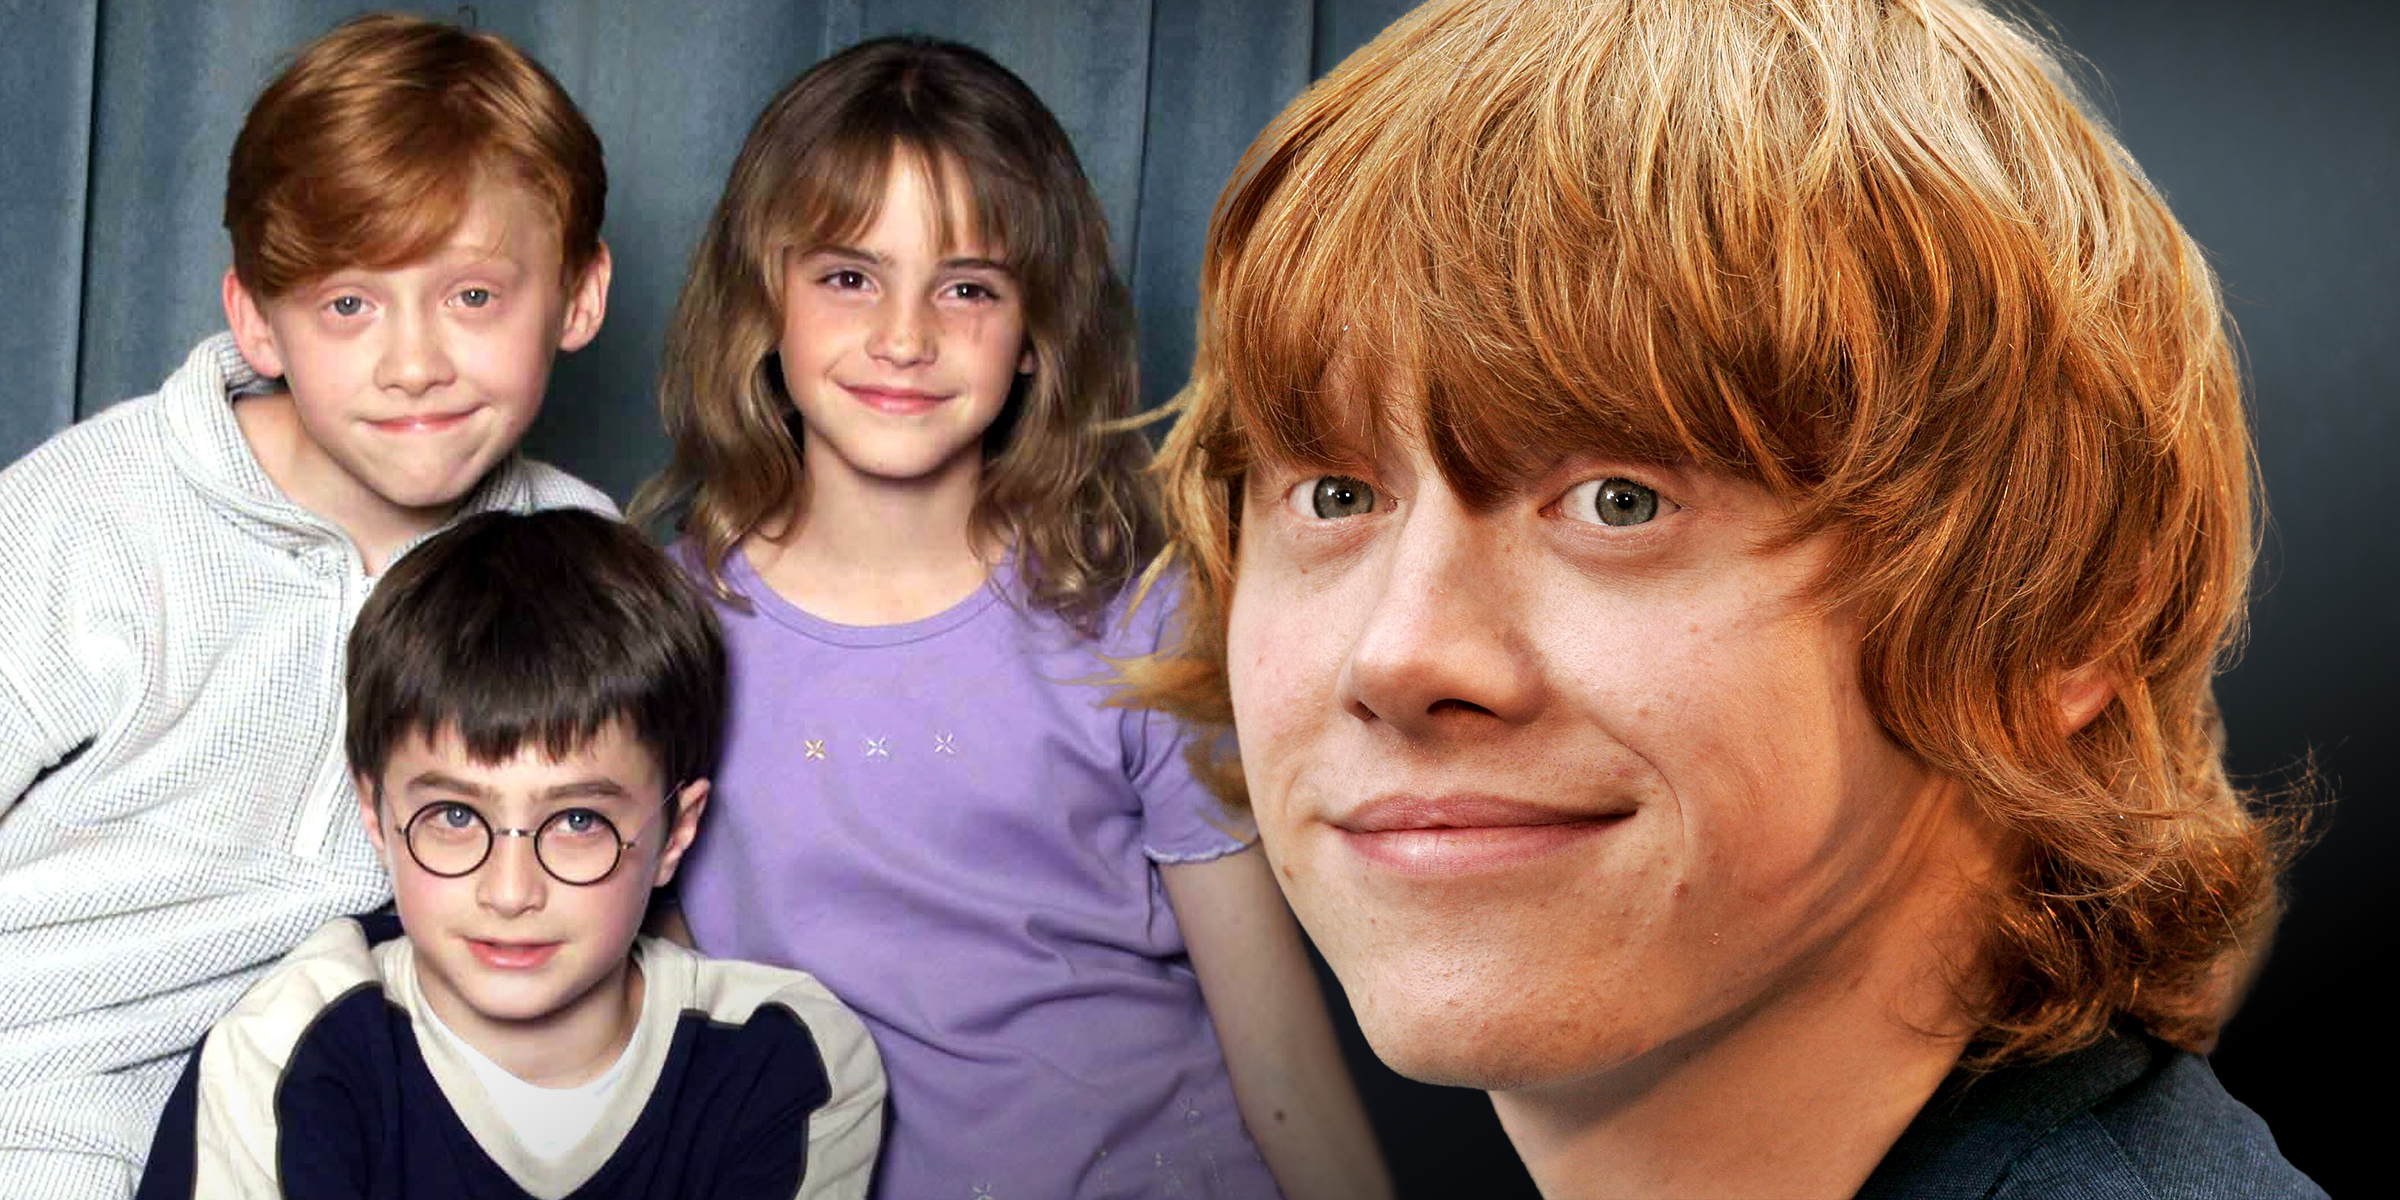 Rupert Grint, Daniel Radcliffe, and Emma Watson | Rupert Grint | Source: Getty Images